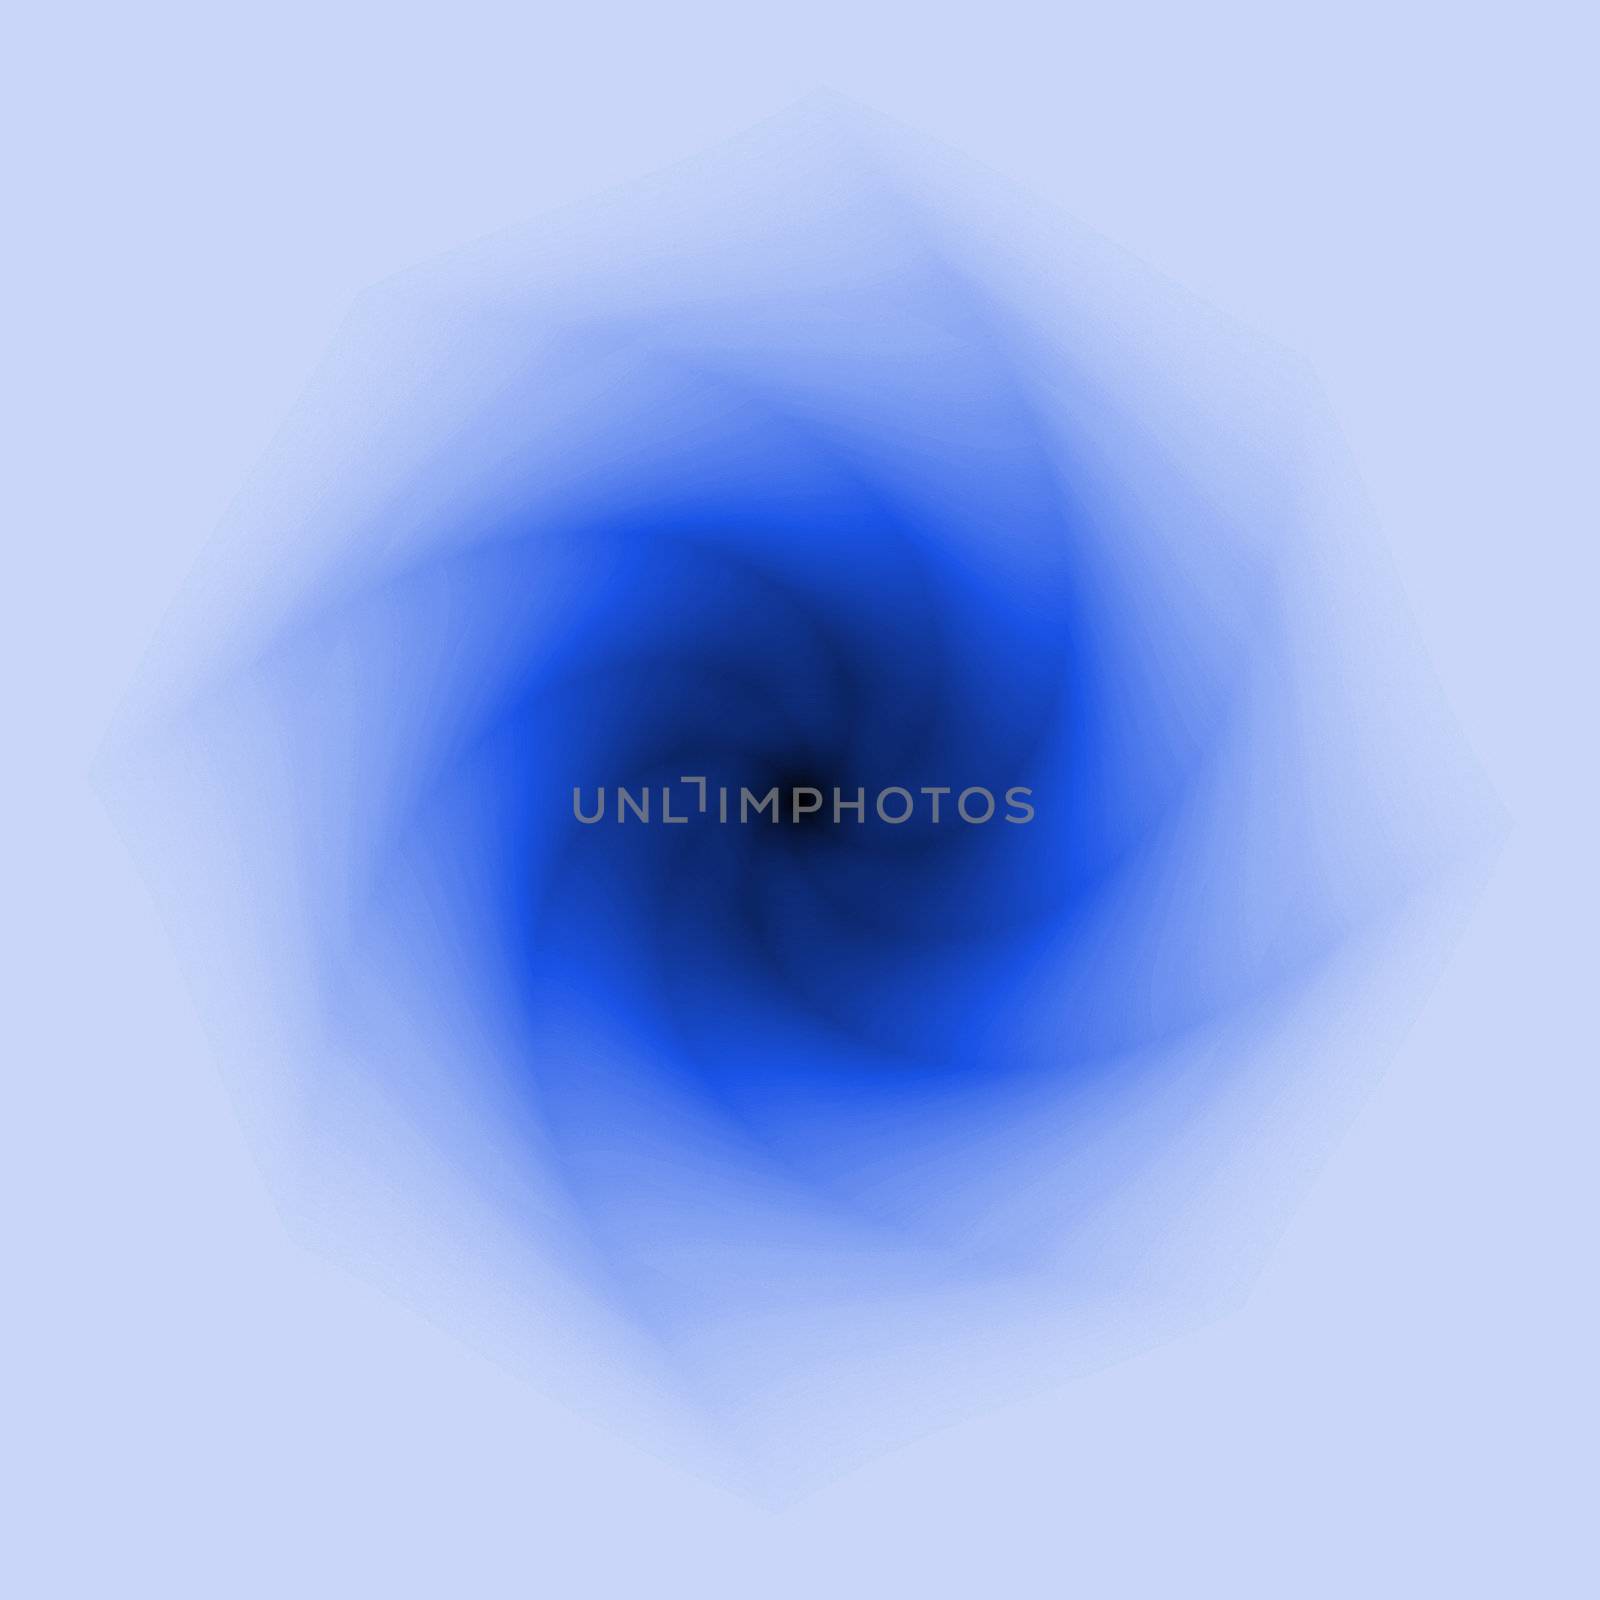 2D digital vortex background in high resolution